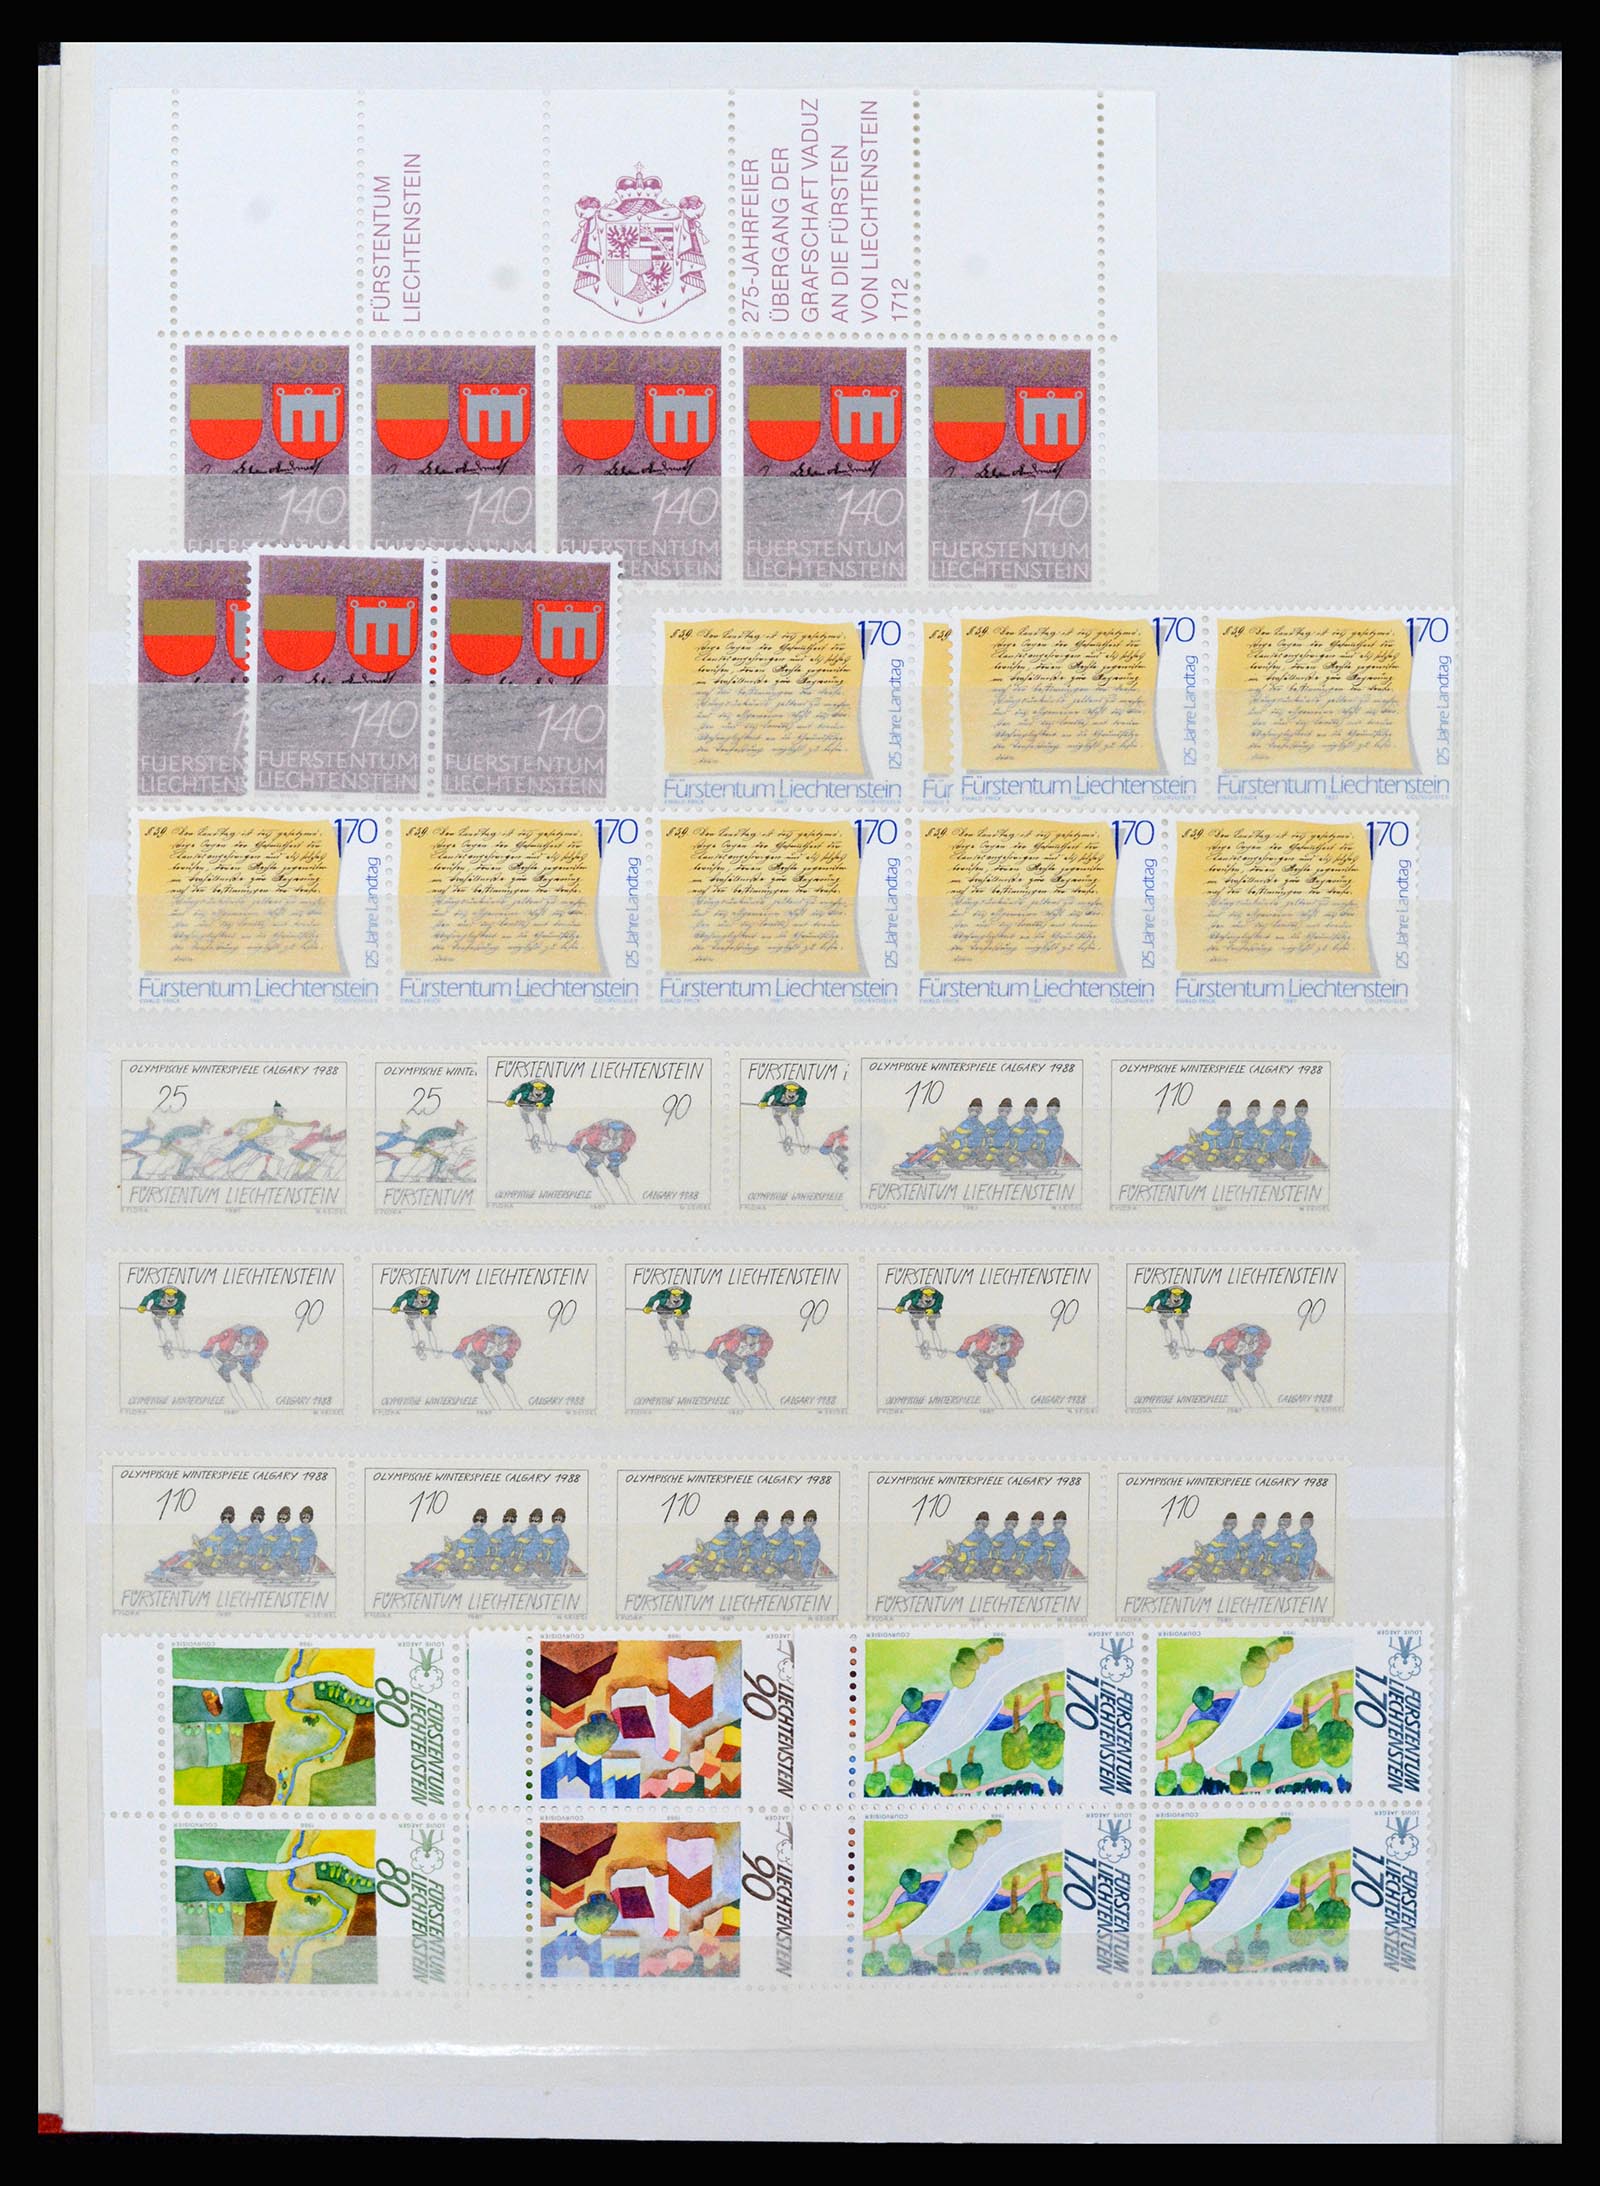 37261 088 - Stamp collection 37261 Liechtenstein 1961-1995.